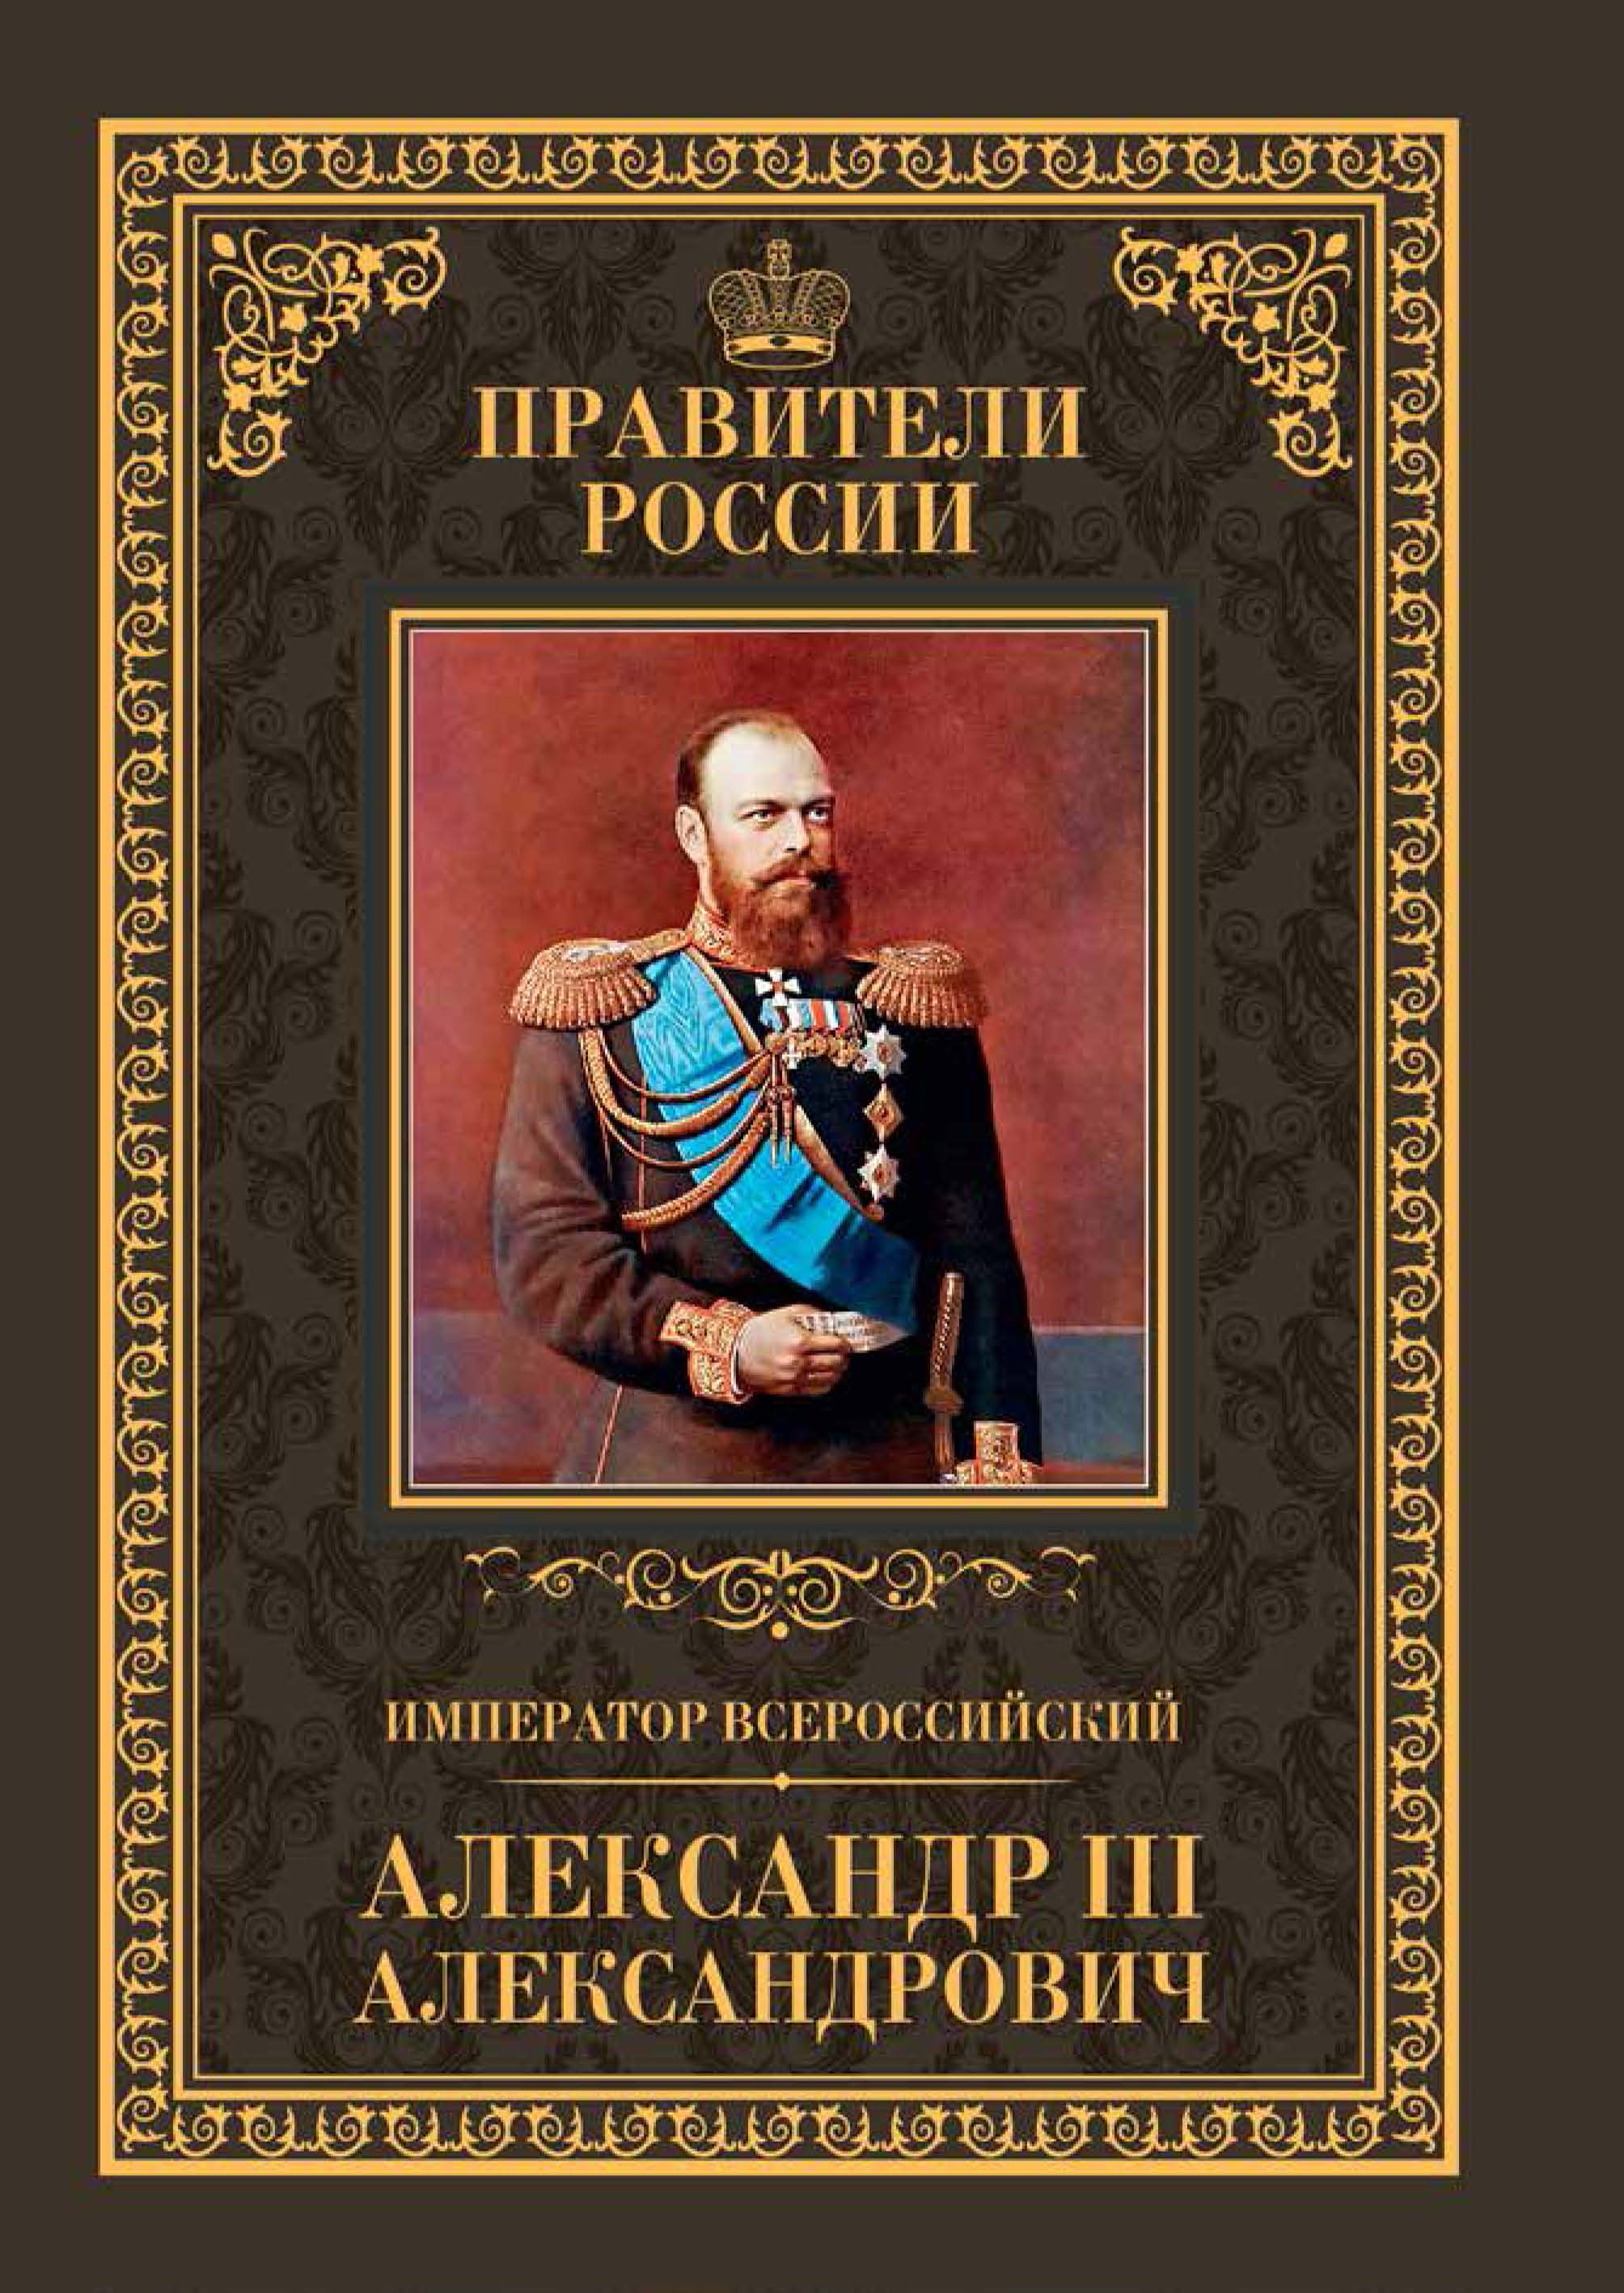 Книга про императора. Правители России книга.